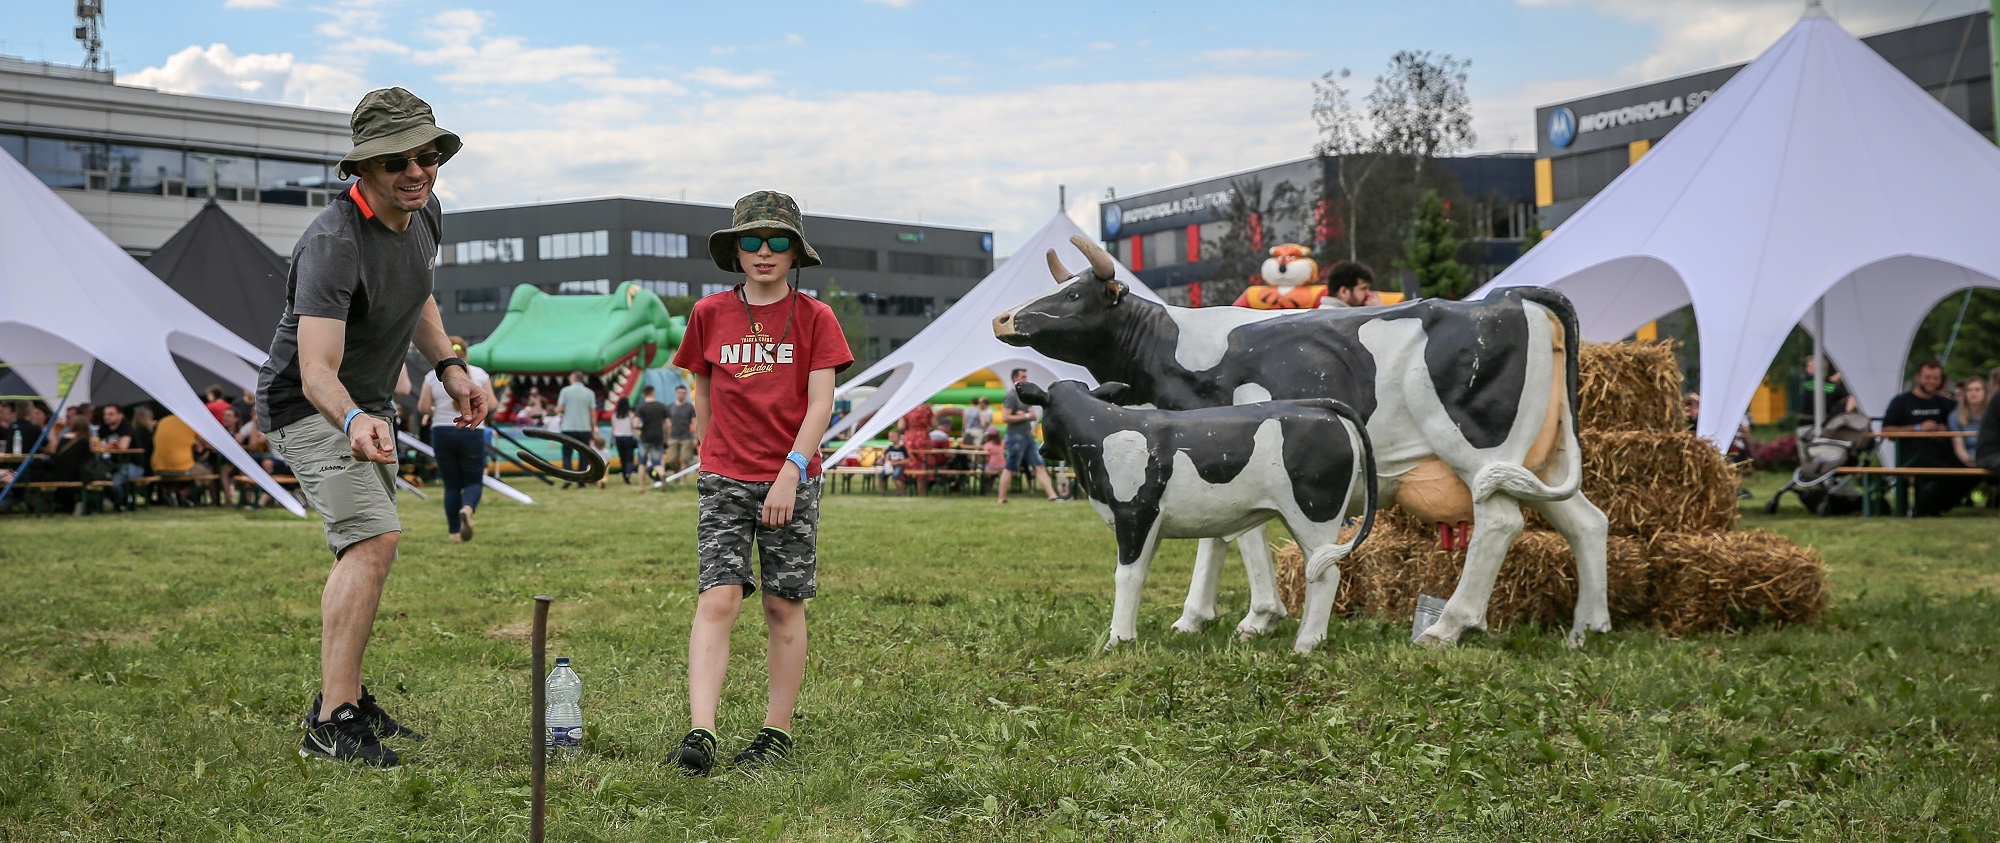 sztuczna krowa krowa do dojenia atrakcje pikniki rodzinne imprezy firmowe.jpg